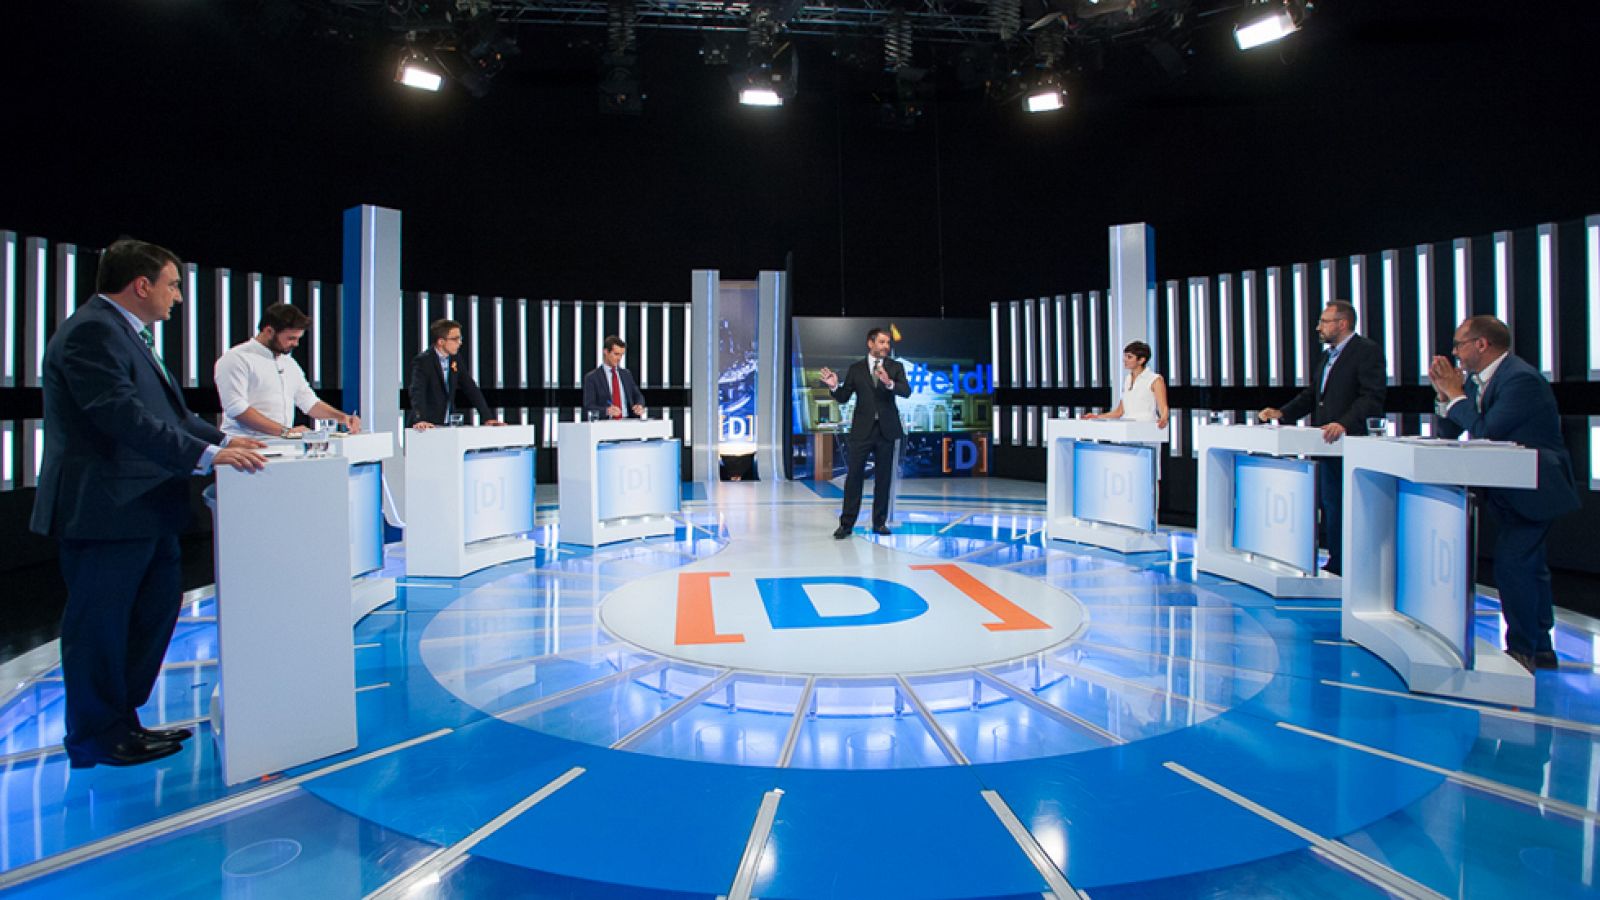 El debate - Debate a siete